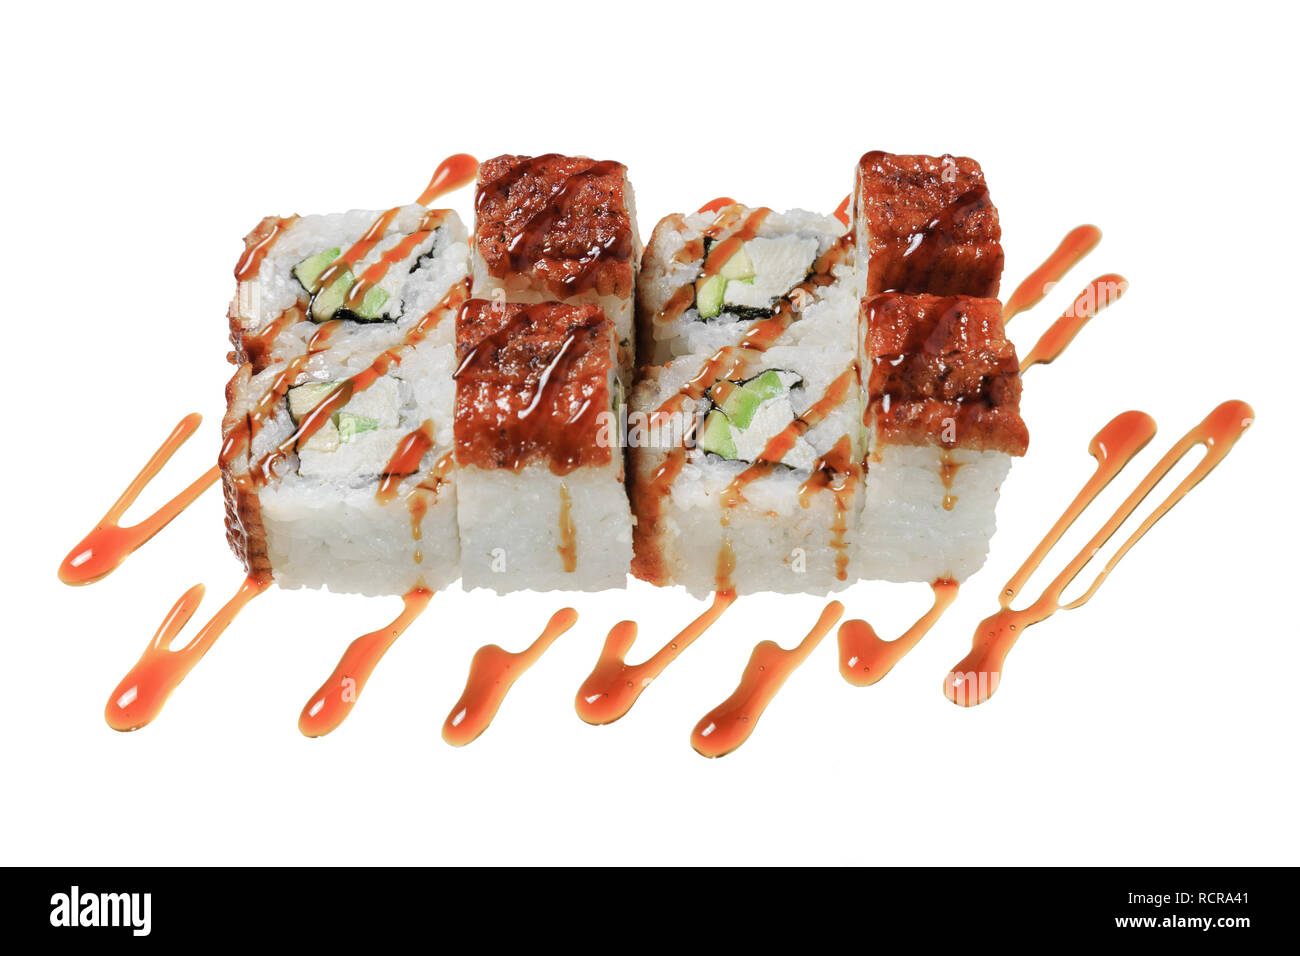 Rotoli di Sushi con anguilla di mare, formaggio, avocado e salsa. Isolato su sfondo bianco. La cucina giapponese. Foto Stock